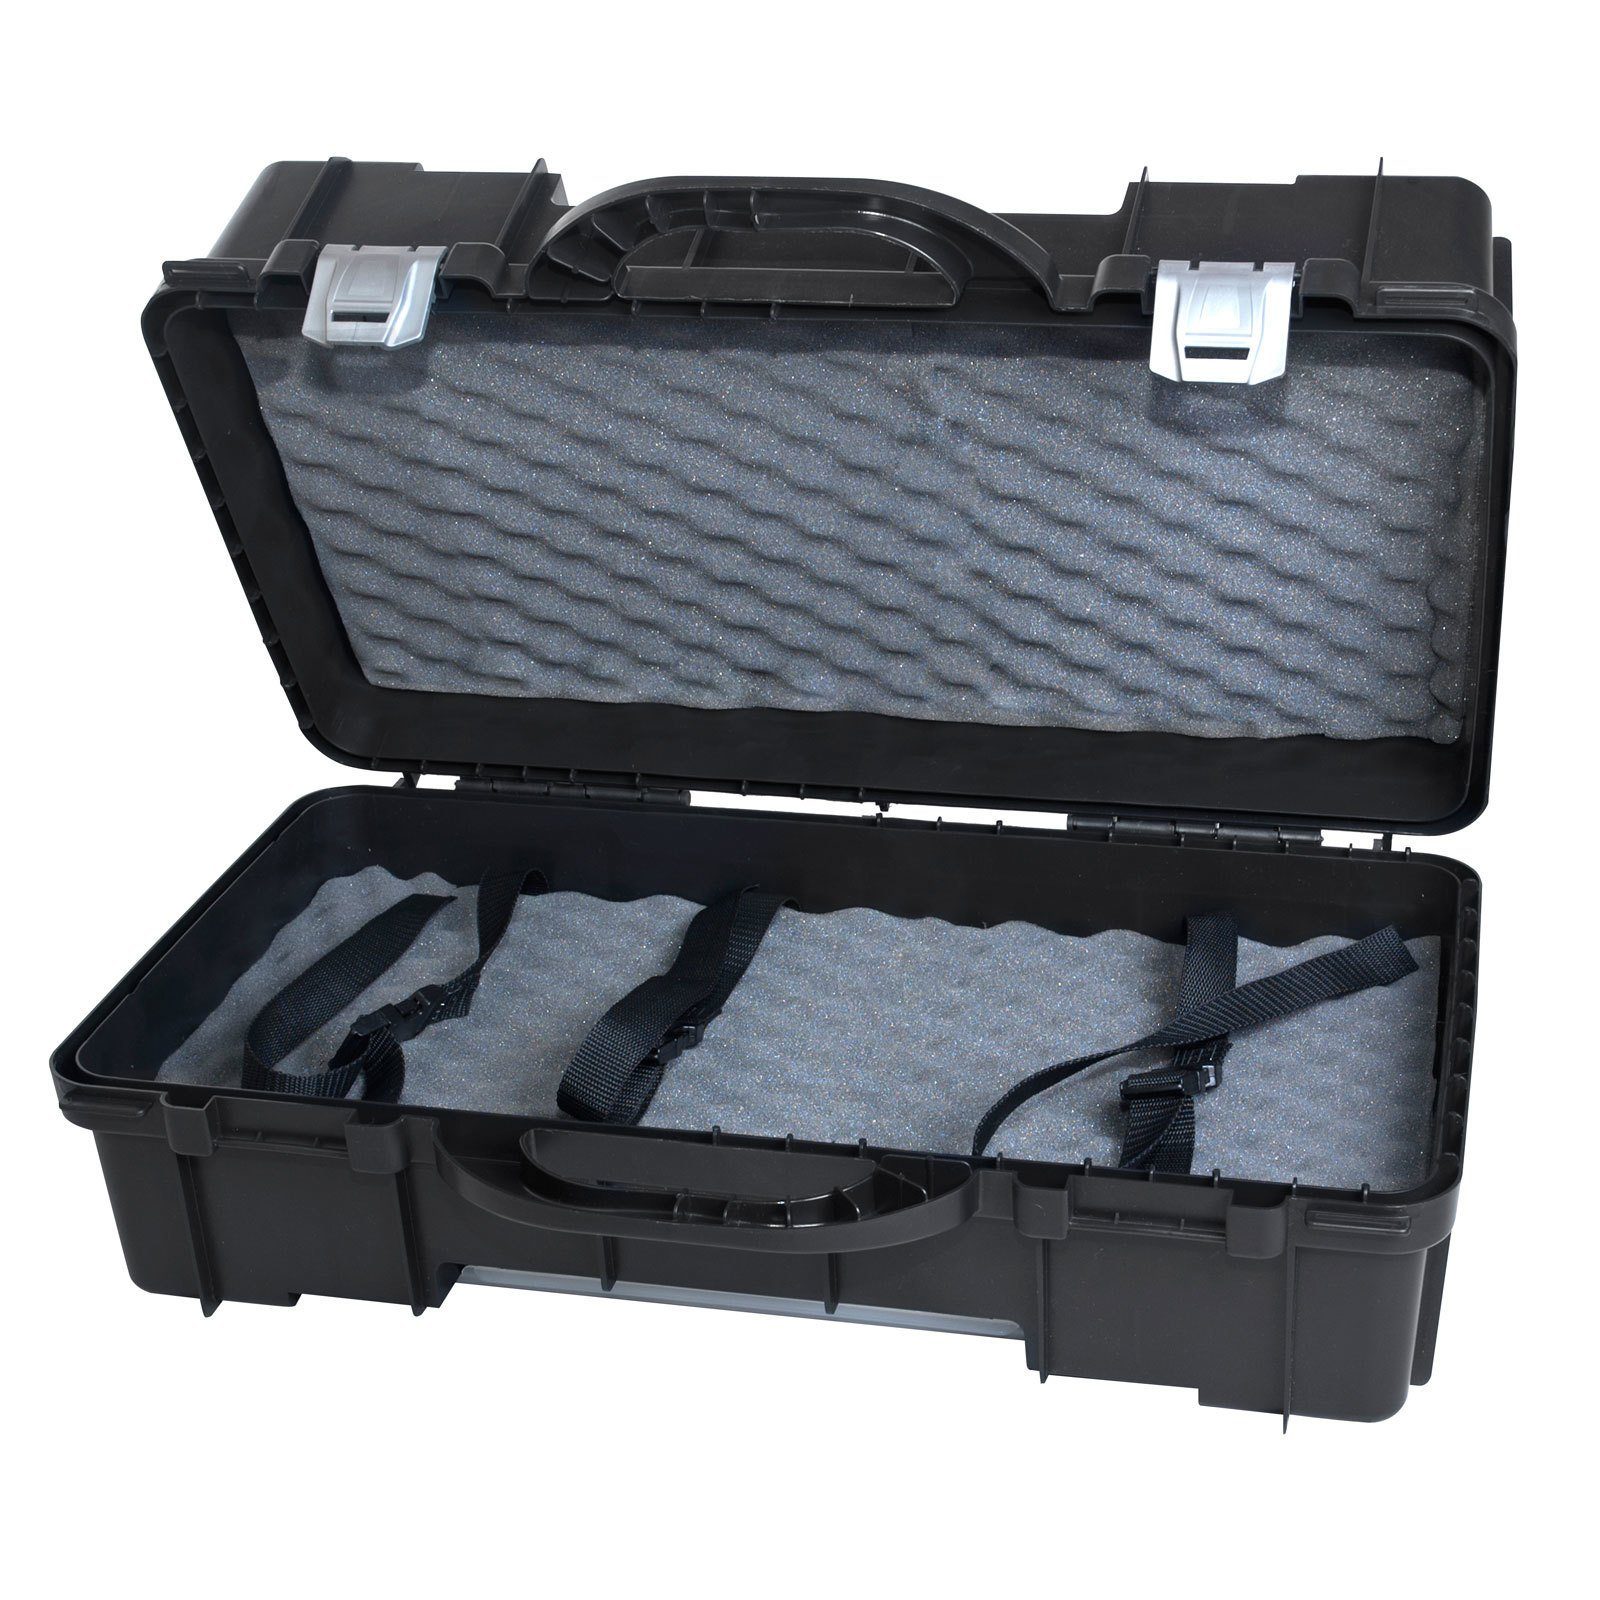 Case, Werkzeugkoffer Schwarz 24x60x38cm, PROREGAL® HxBxT Werkzeugkoffer